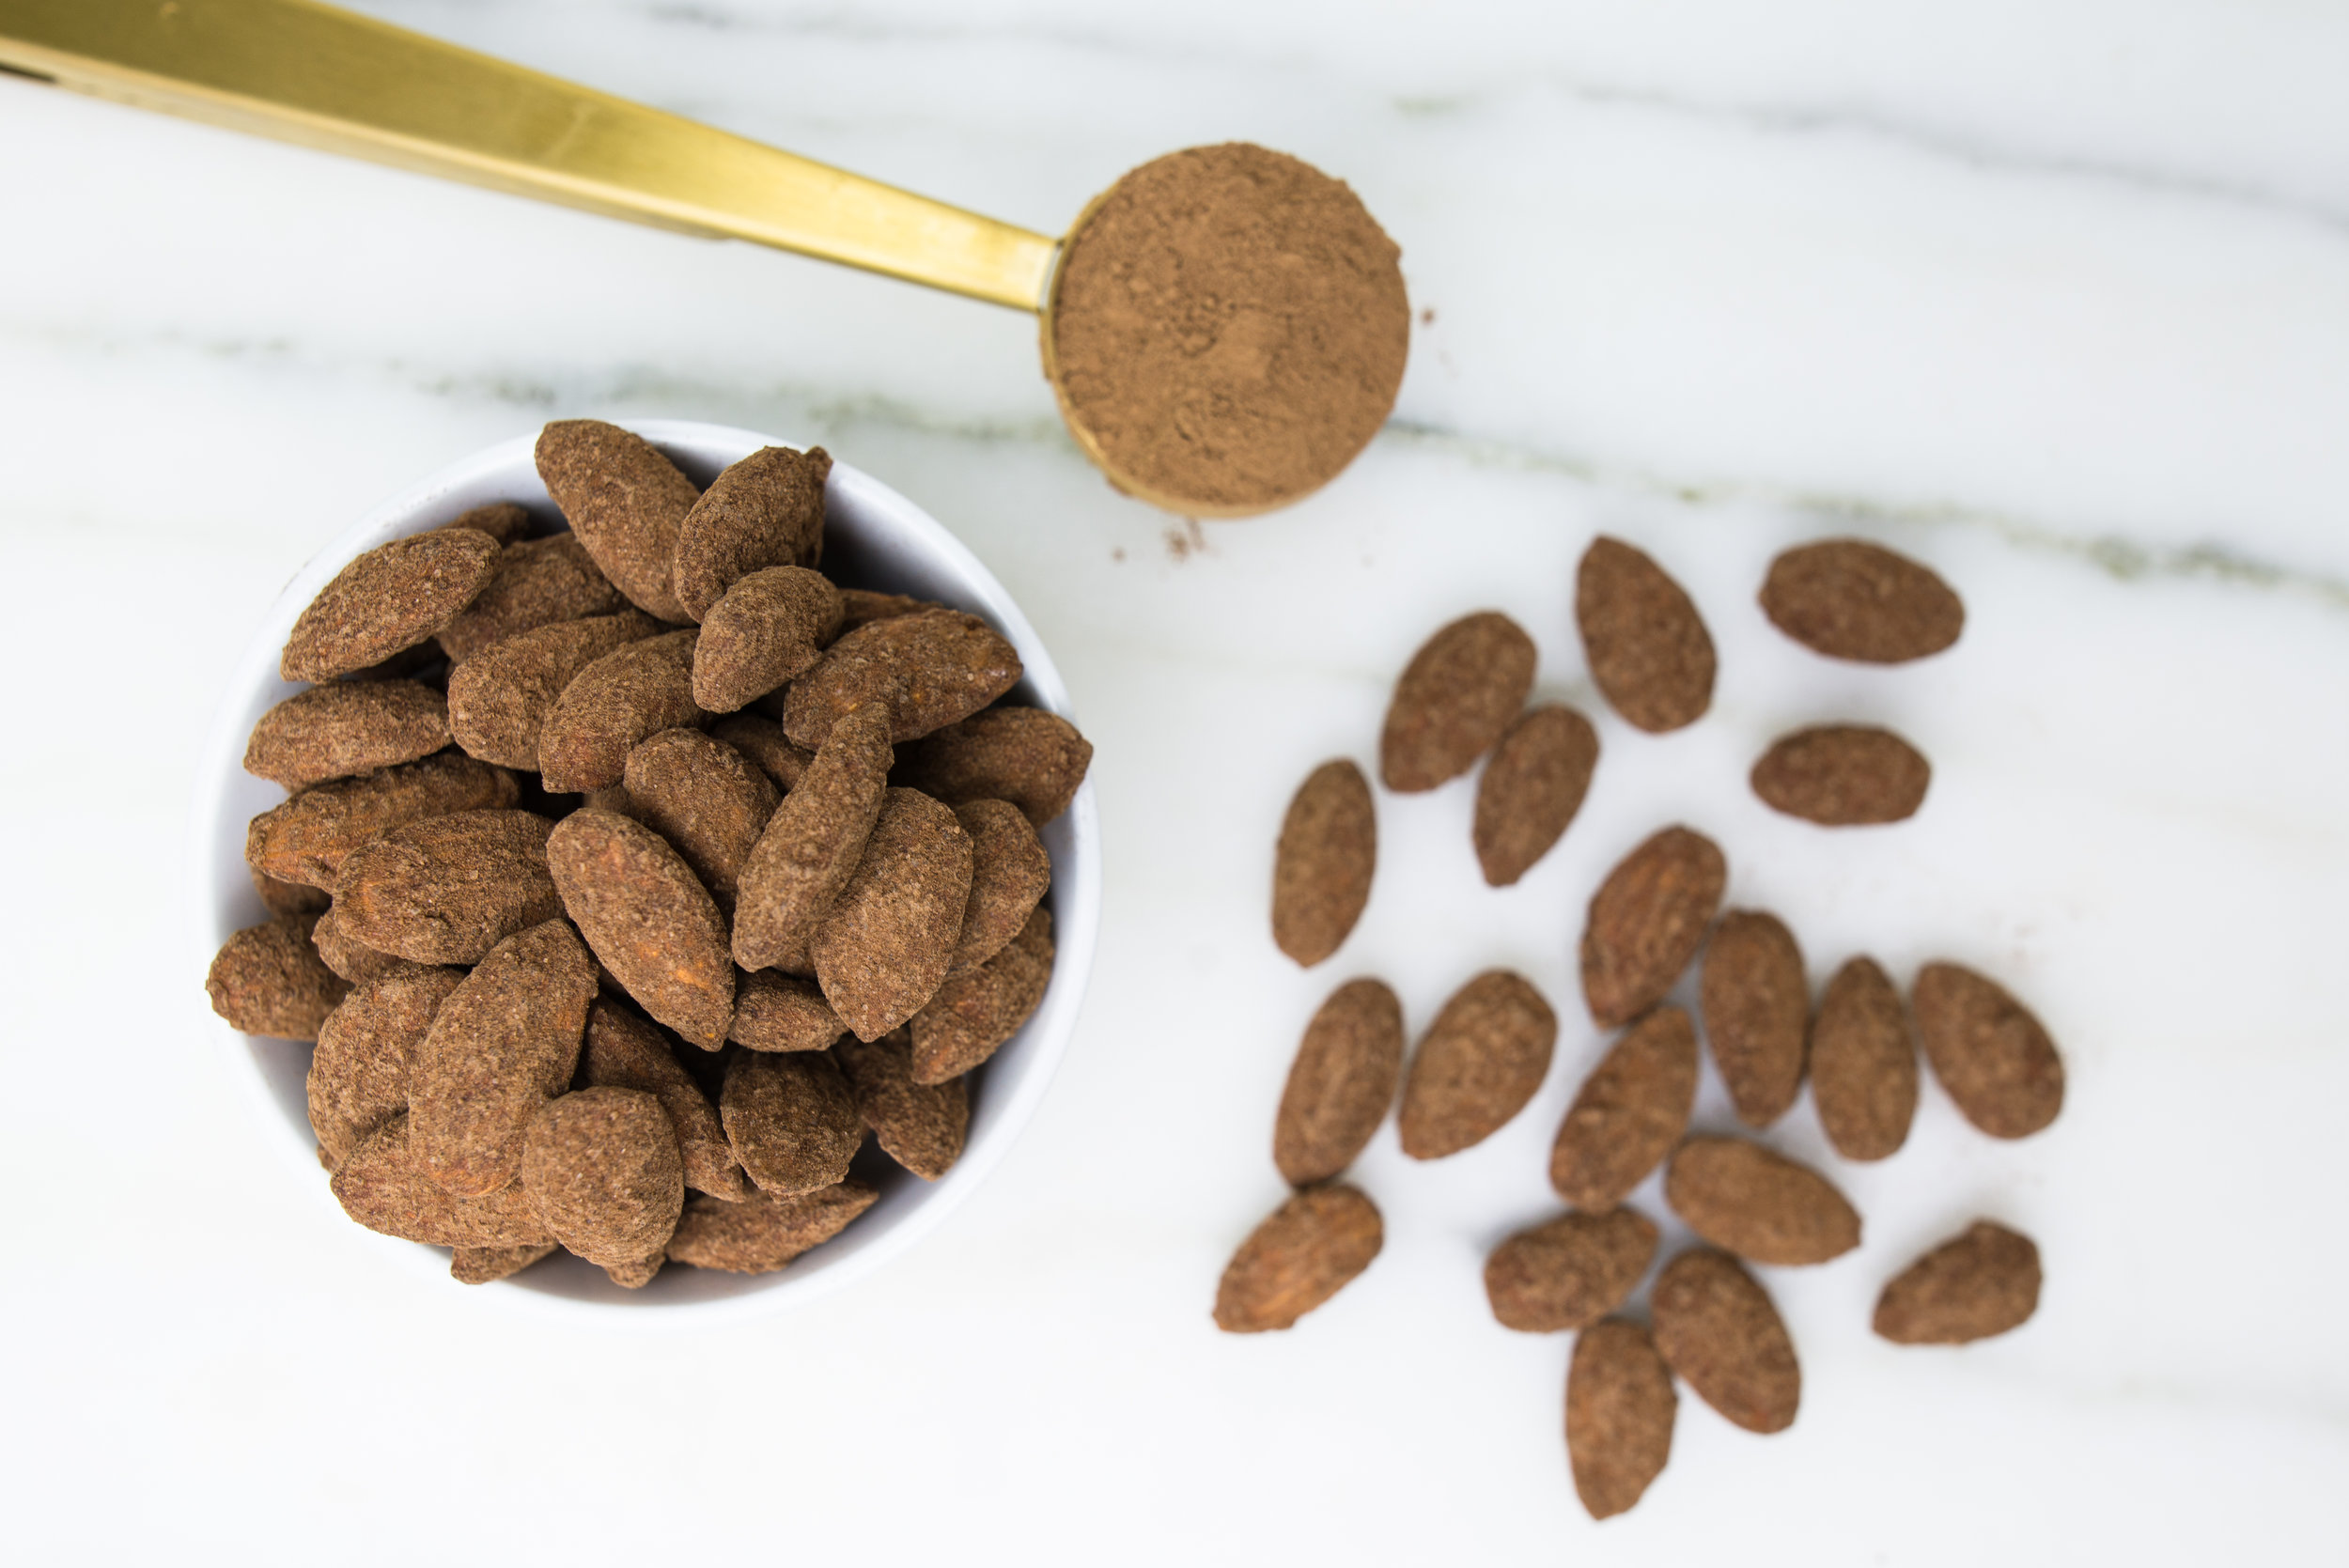 1804円 保障 ナッツハーベストココアダストアーモンド 36オンス Nut Harvest Cocoa Dusted Almonds 36 oz